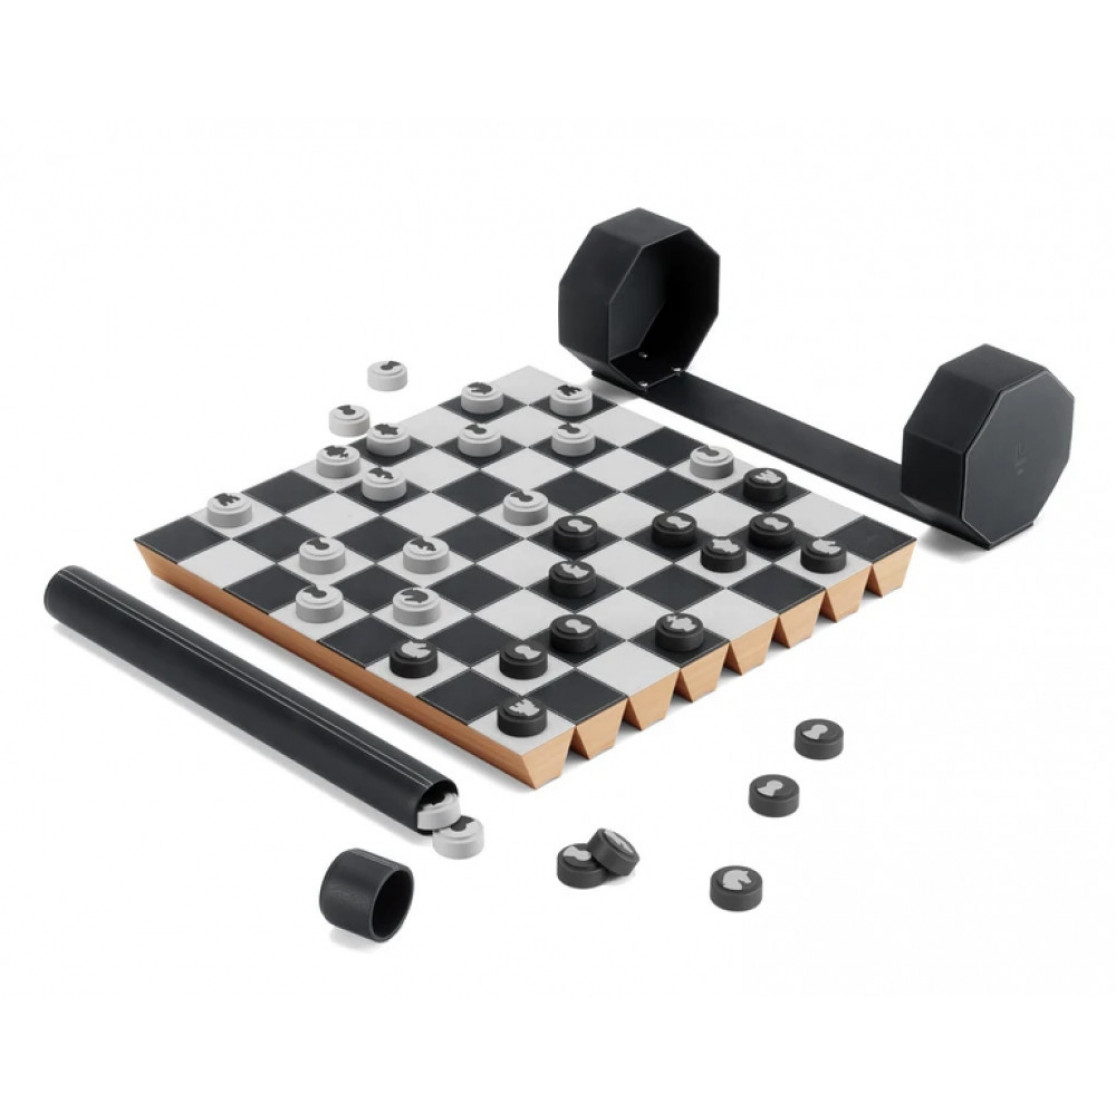 Jogo de xadrez e damas em madeira